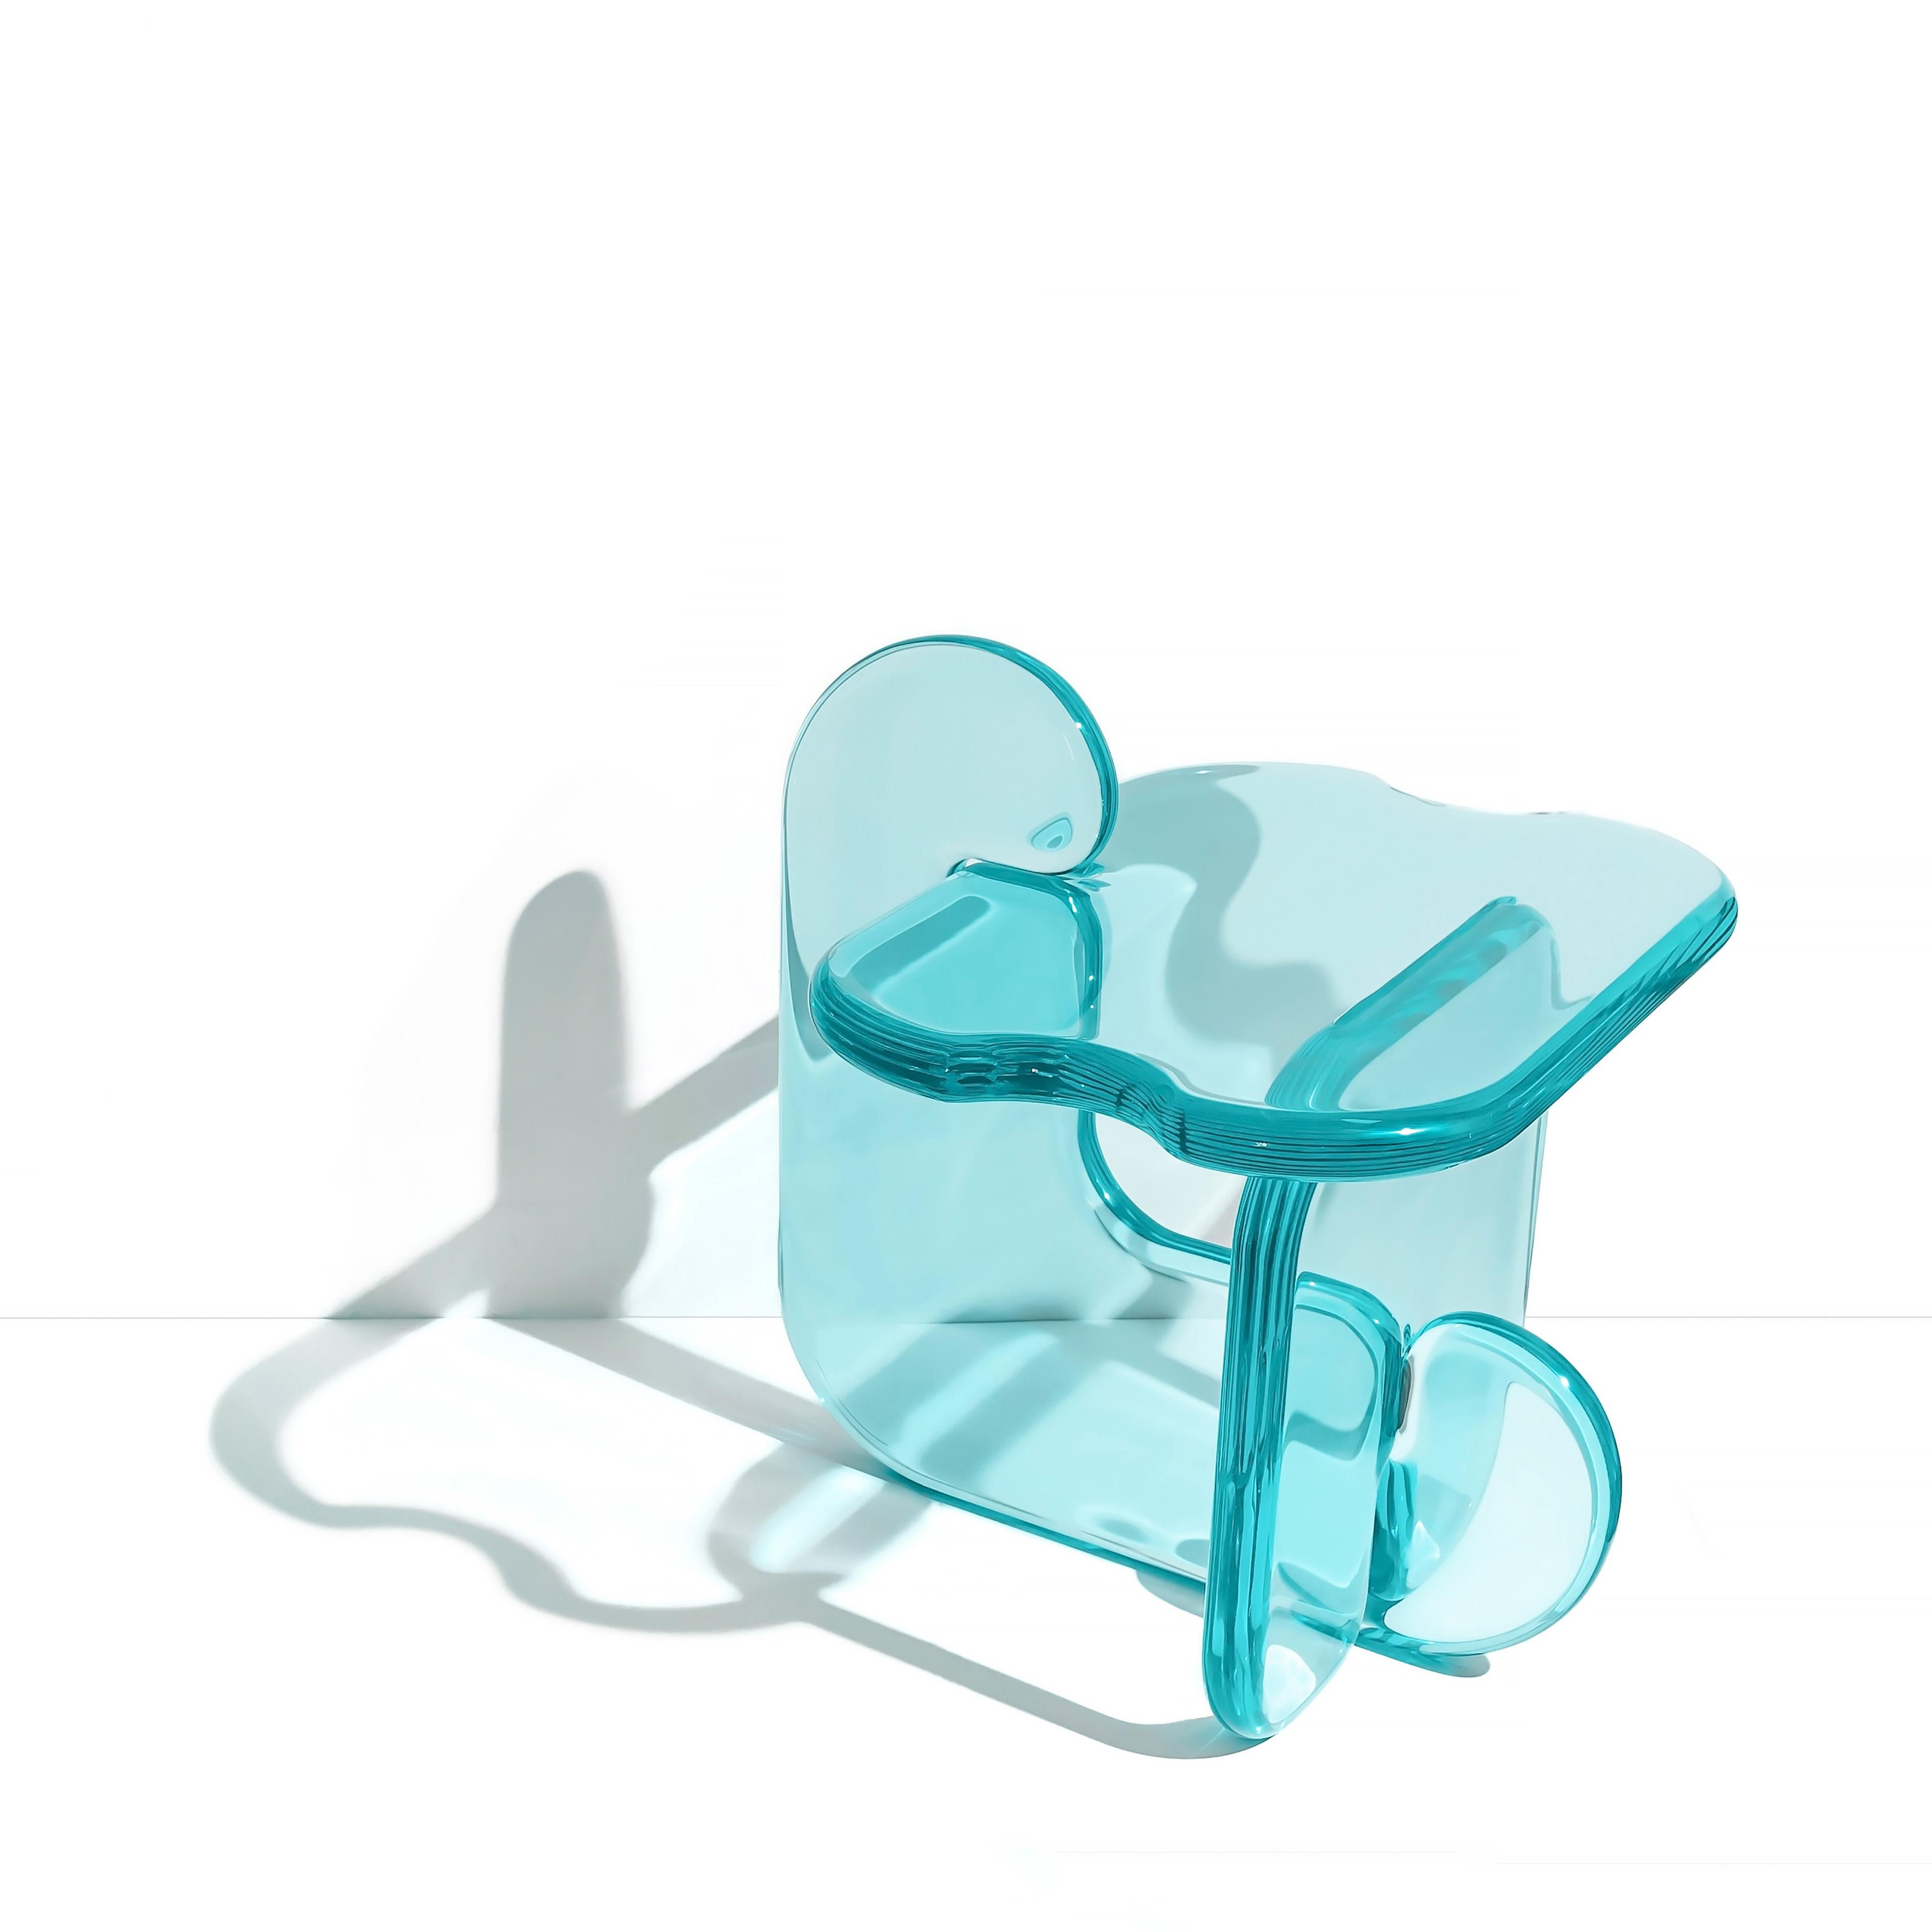 Cette table d'appoint s'inscrit dans la continuité de la série de meubles sculpturaux Plump. Cette table transparente est un ajout contemporain et moderne à tout espace. Les formes jouent sur l'effet que produit la résine lorsque la lumière est